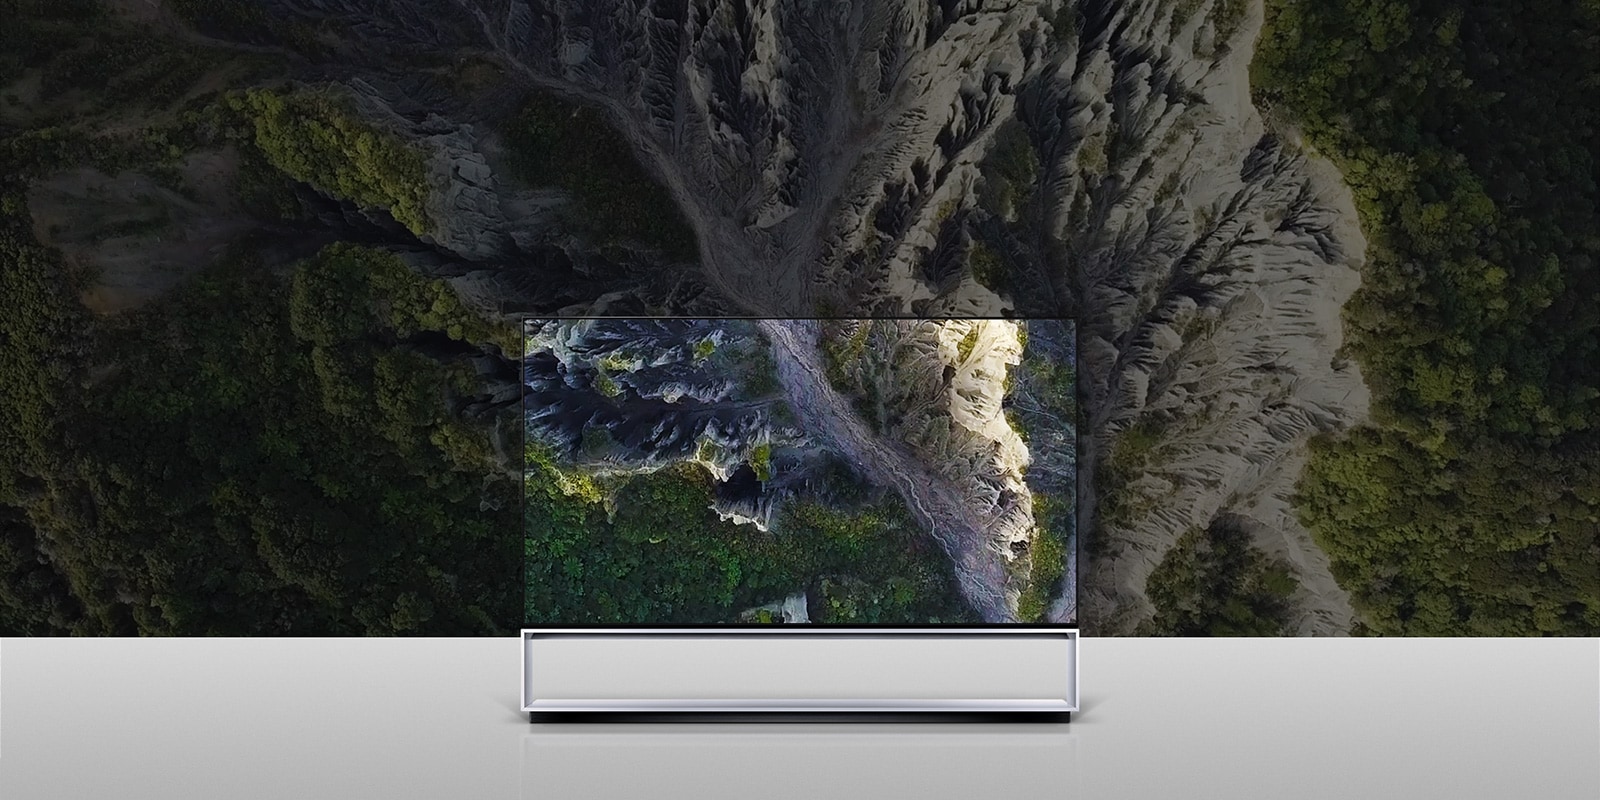 Bilde av LG SIGNATURE OLED TV Z9 med skjermen fylt med en kløft.